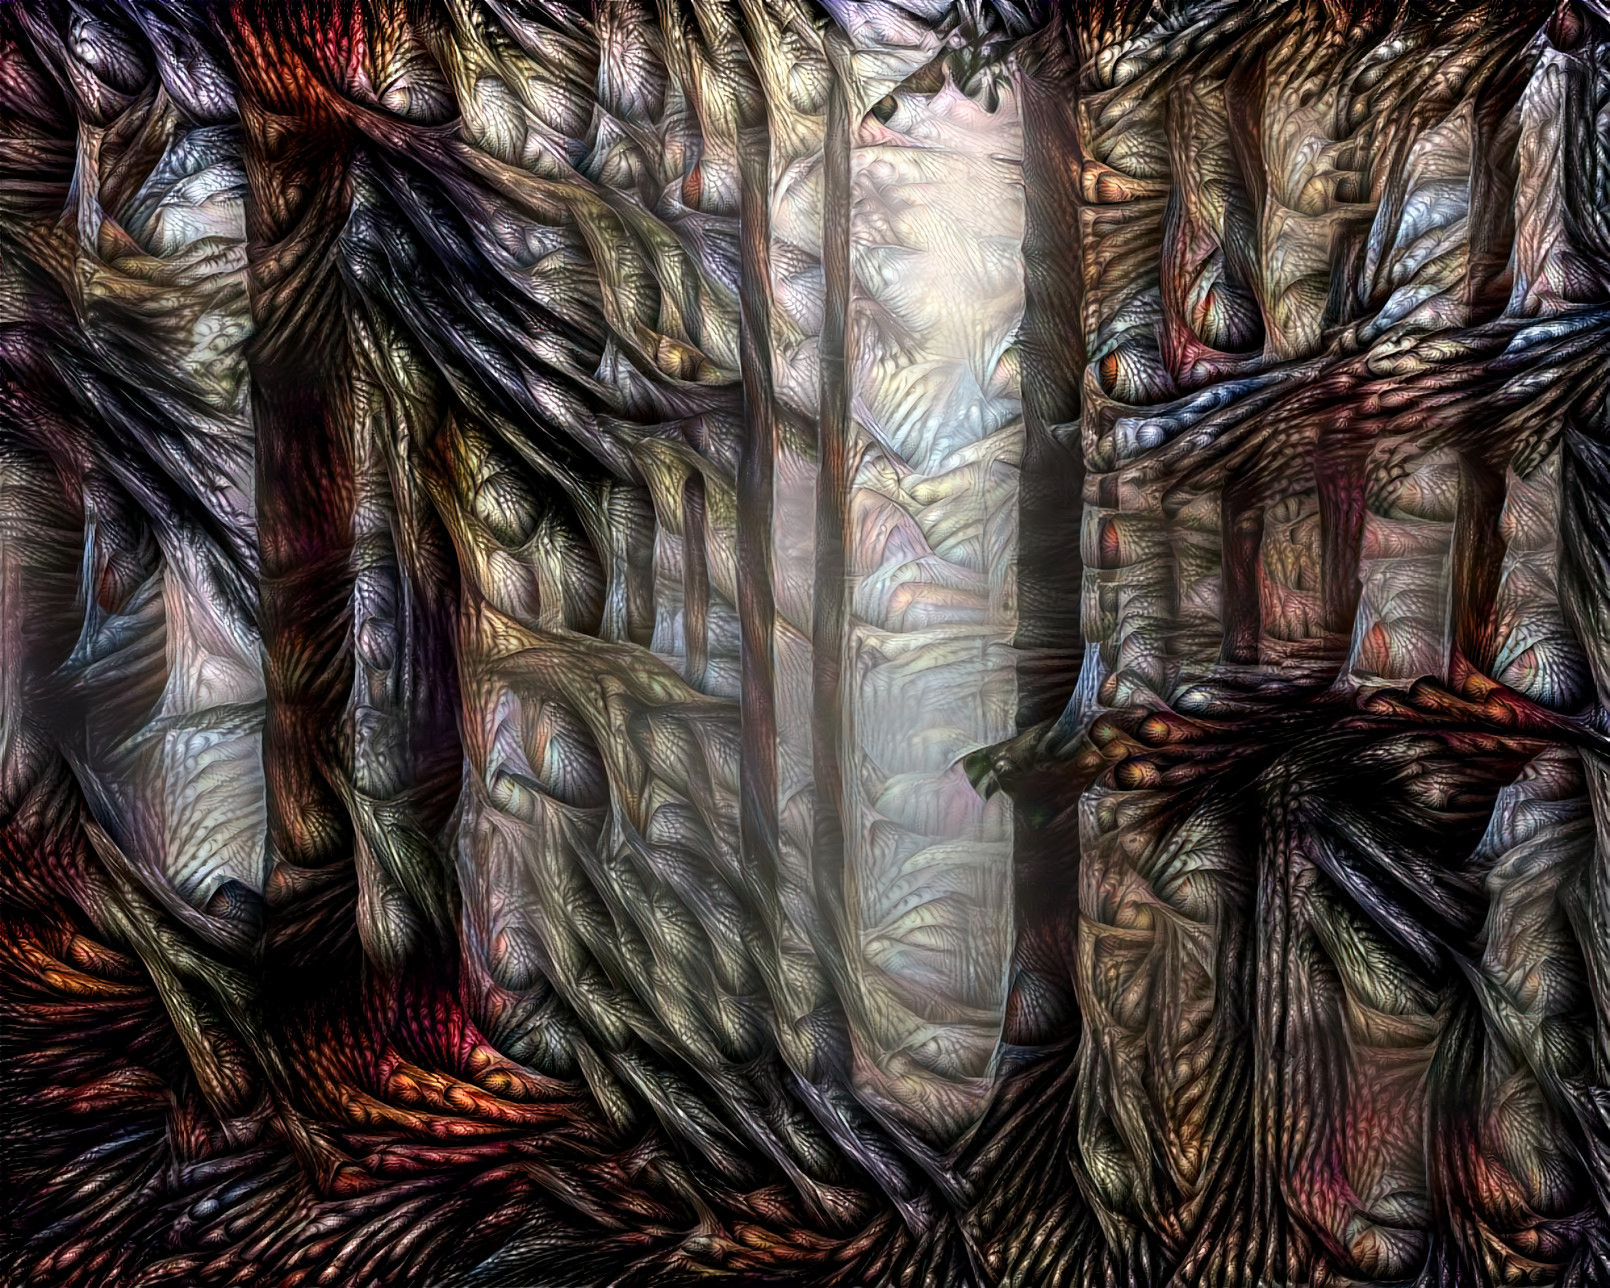 Fractal Forest